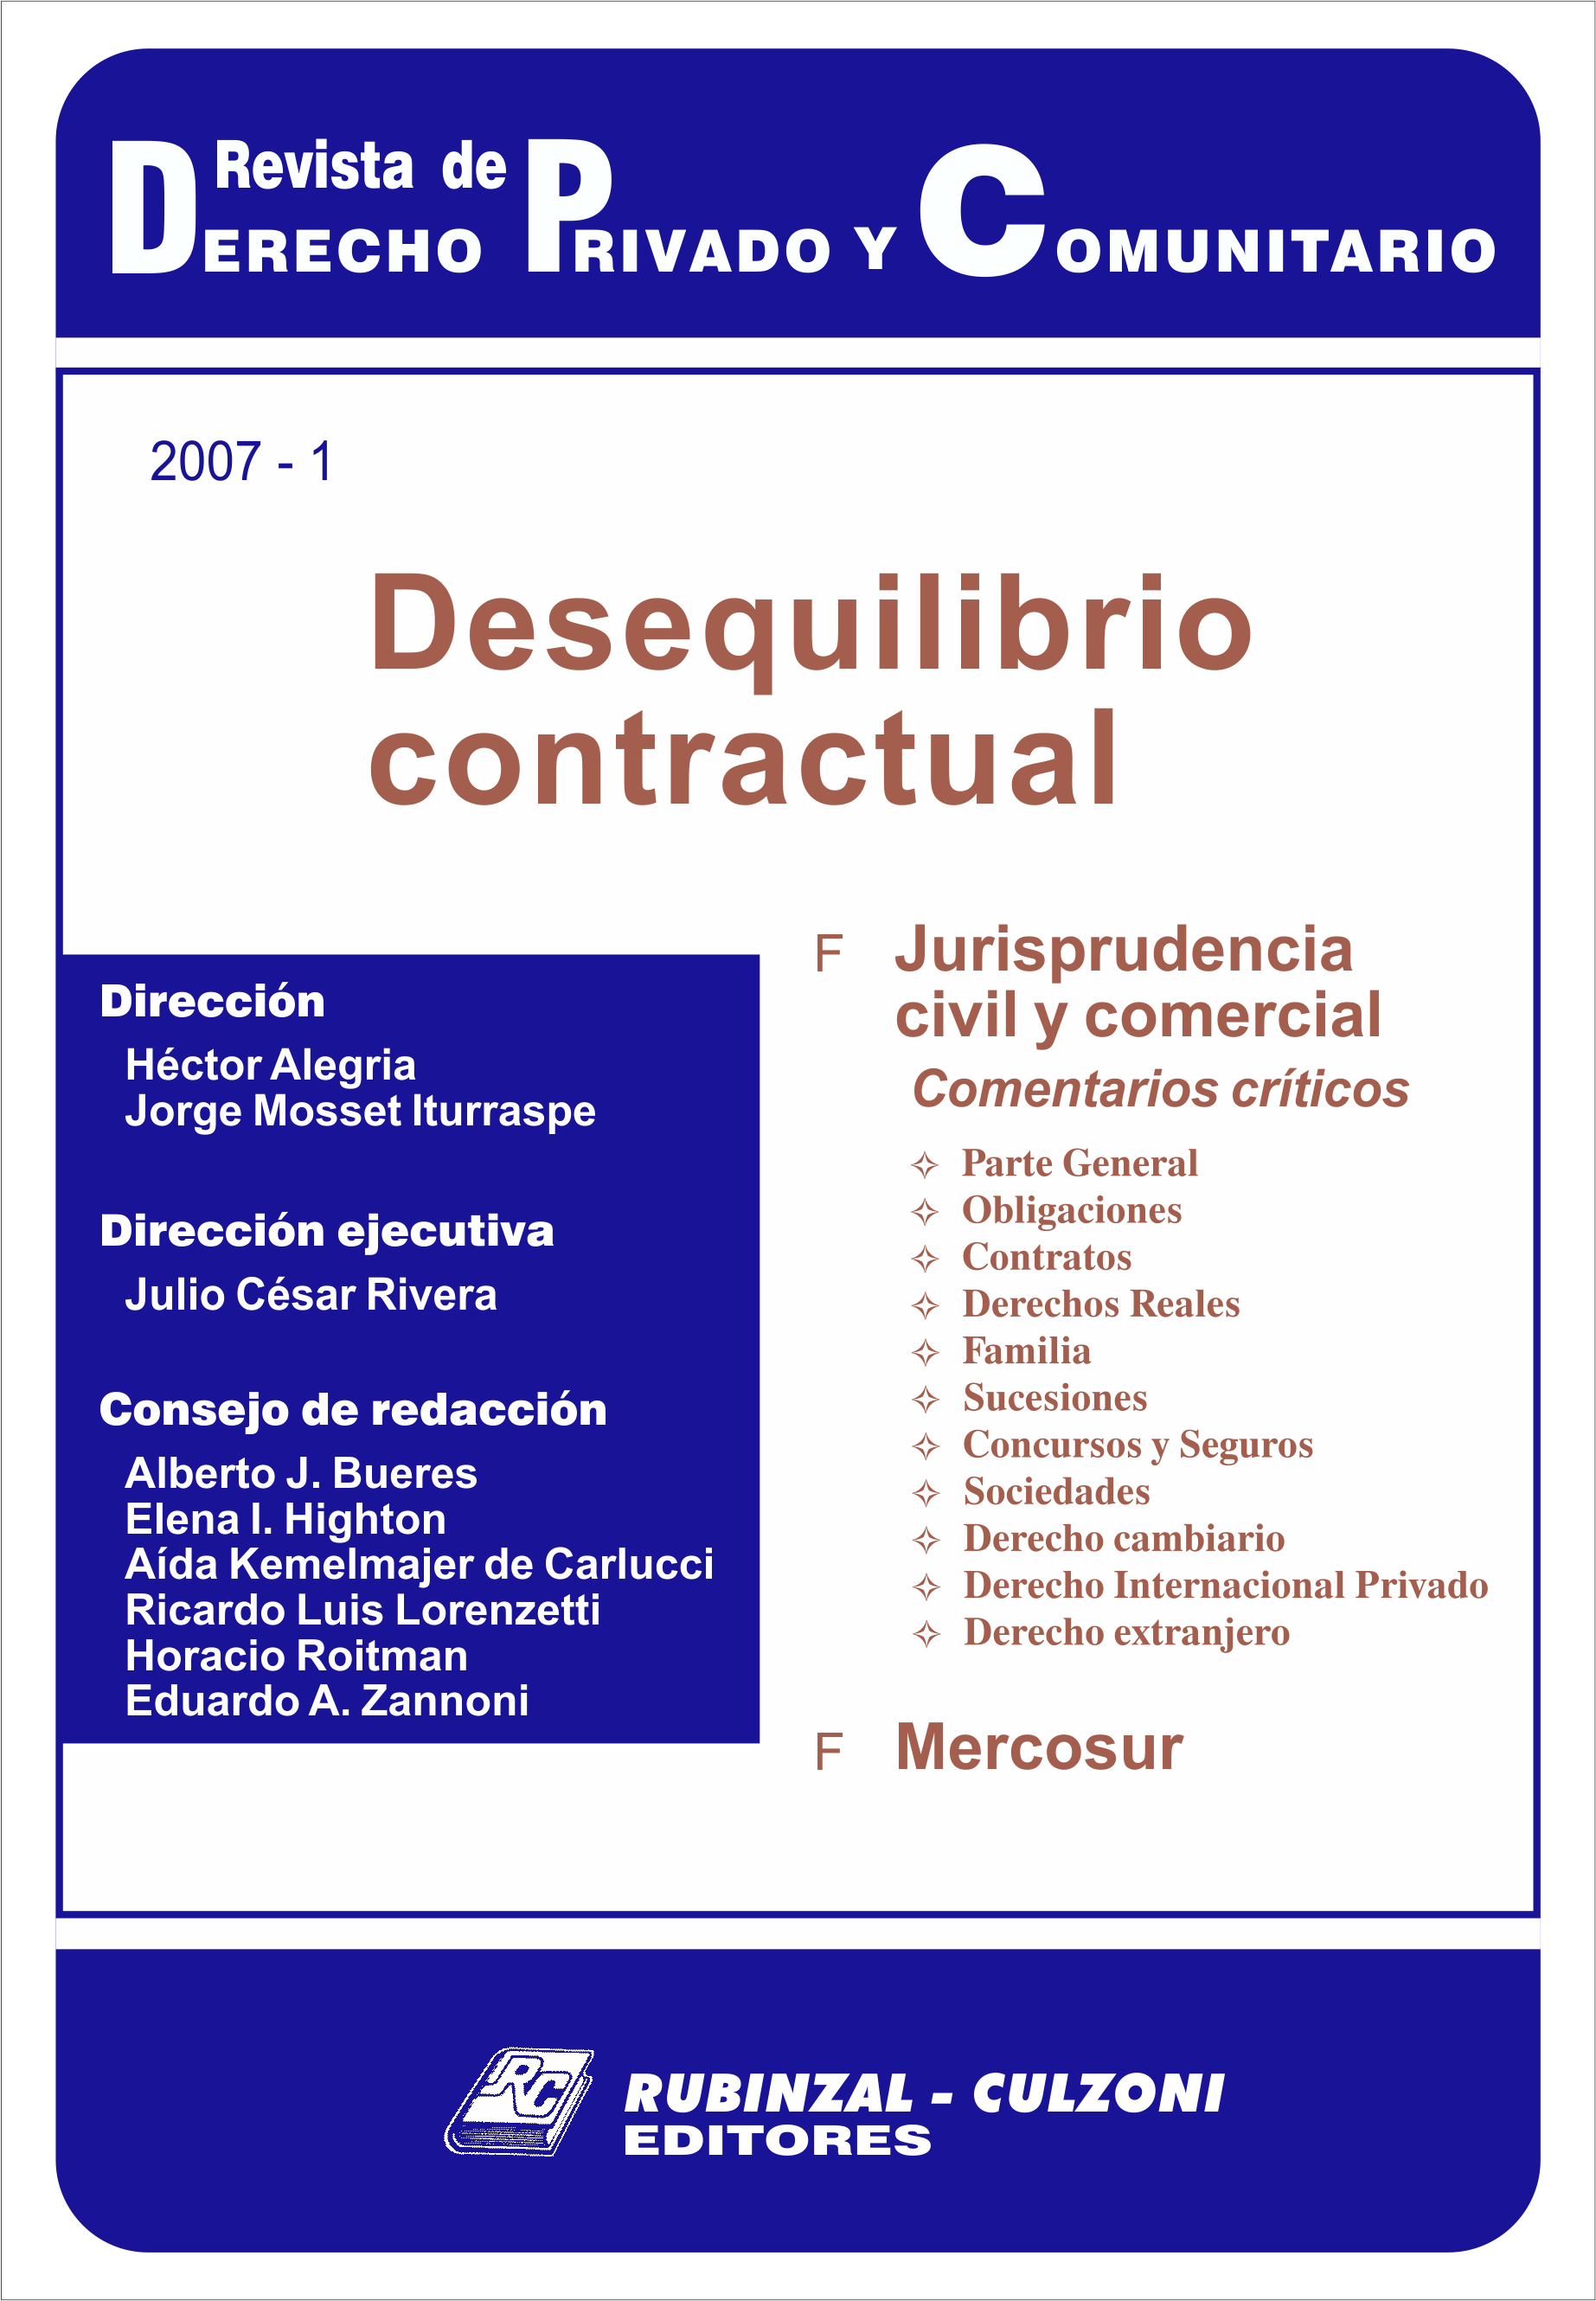 Revista de Derecho Privado y Comunitario - Desequilibrio contractual